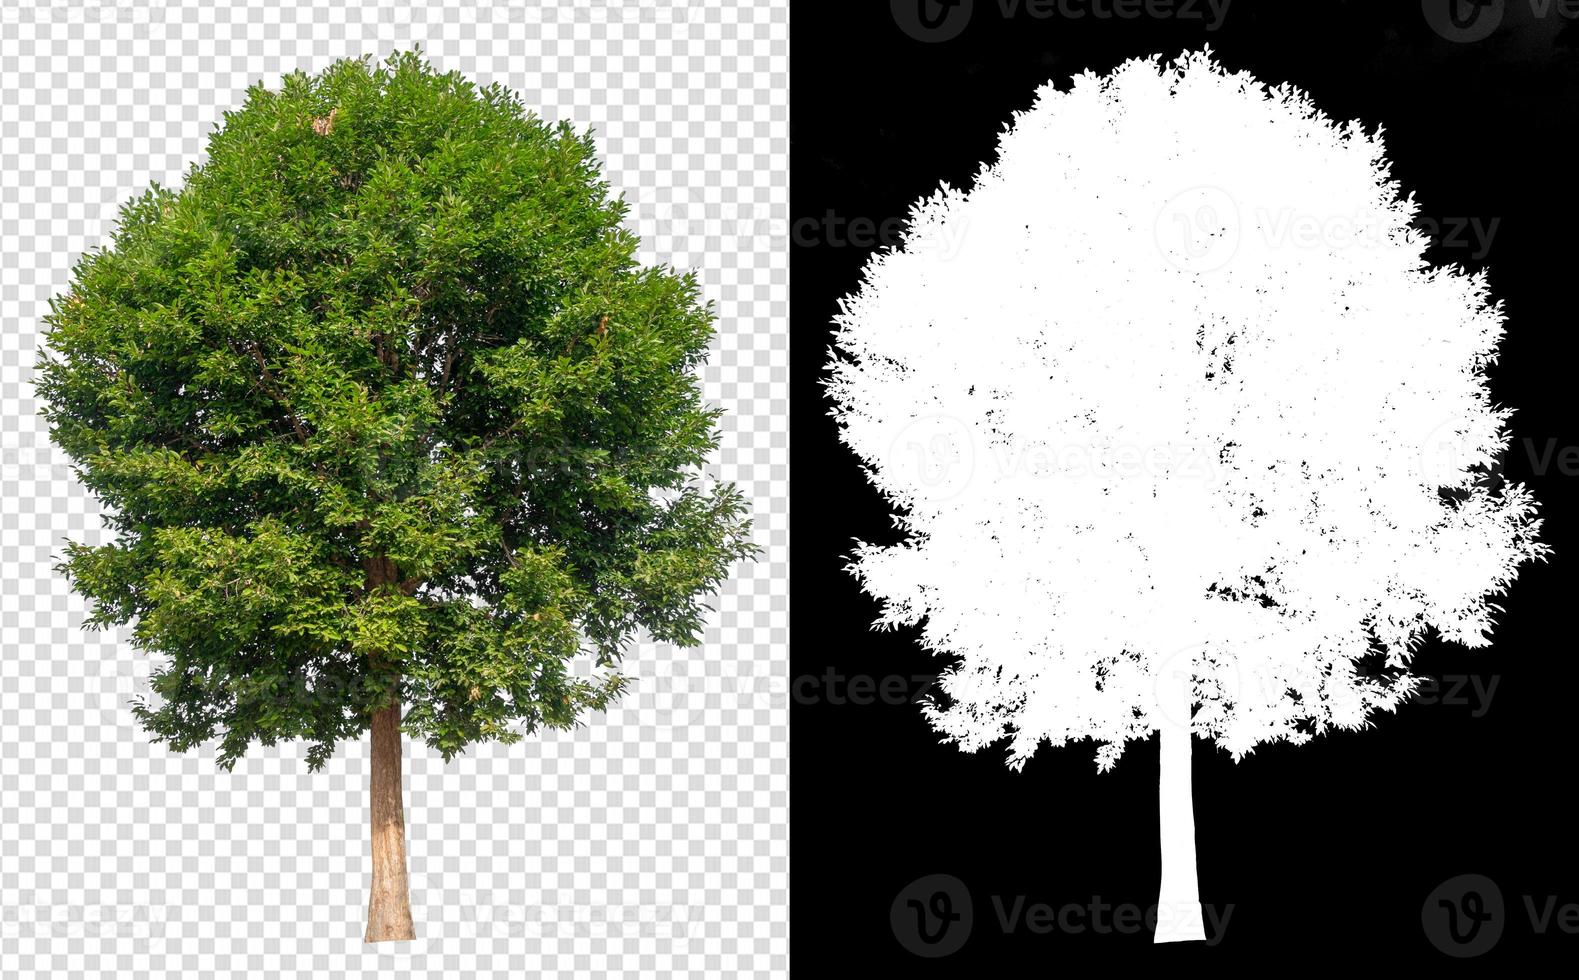 Baum auf transparentem Hintergrund foto